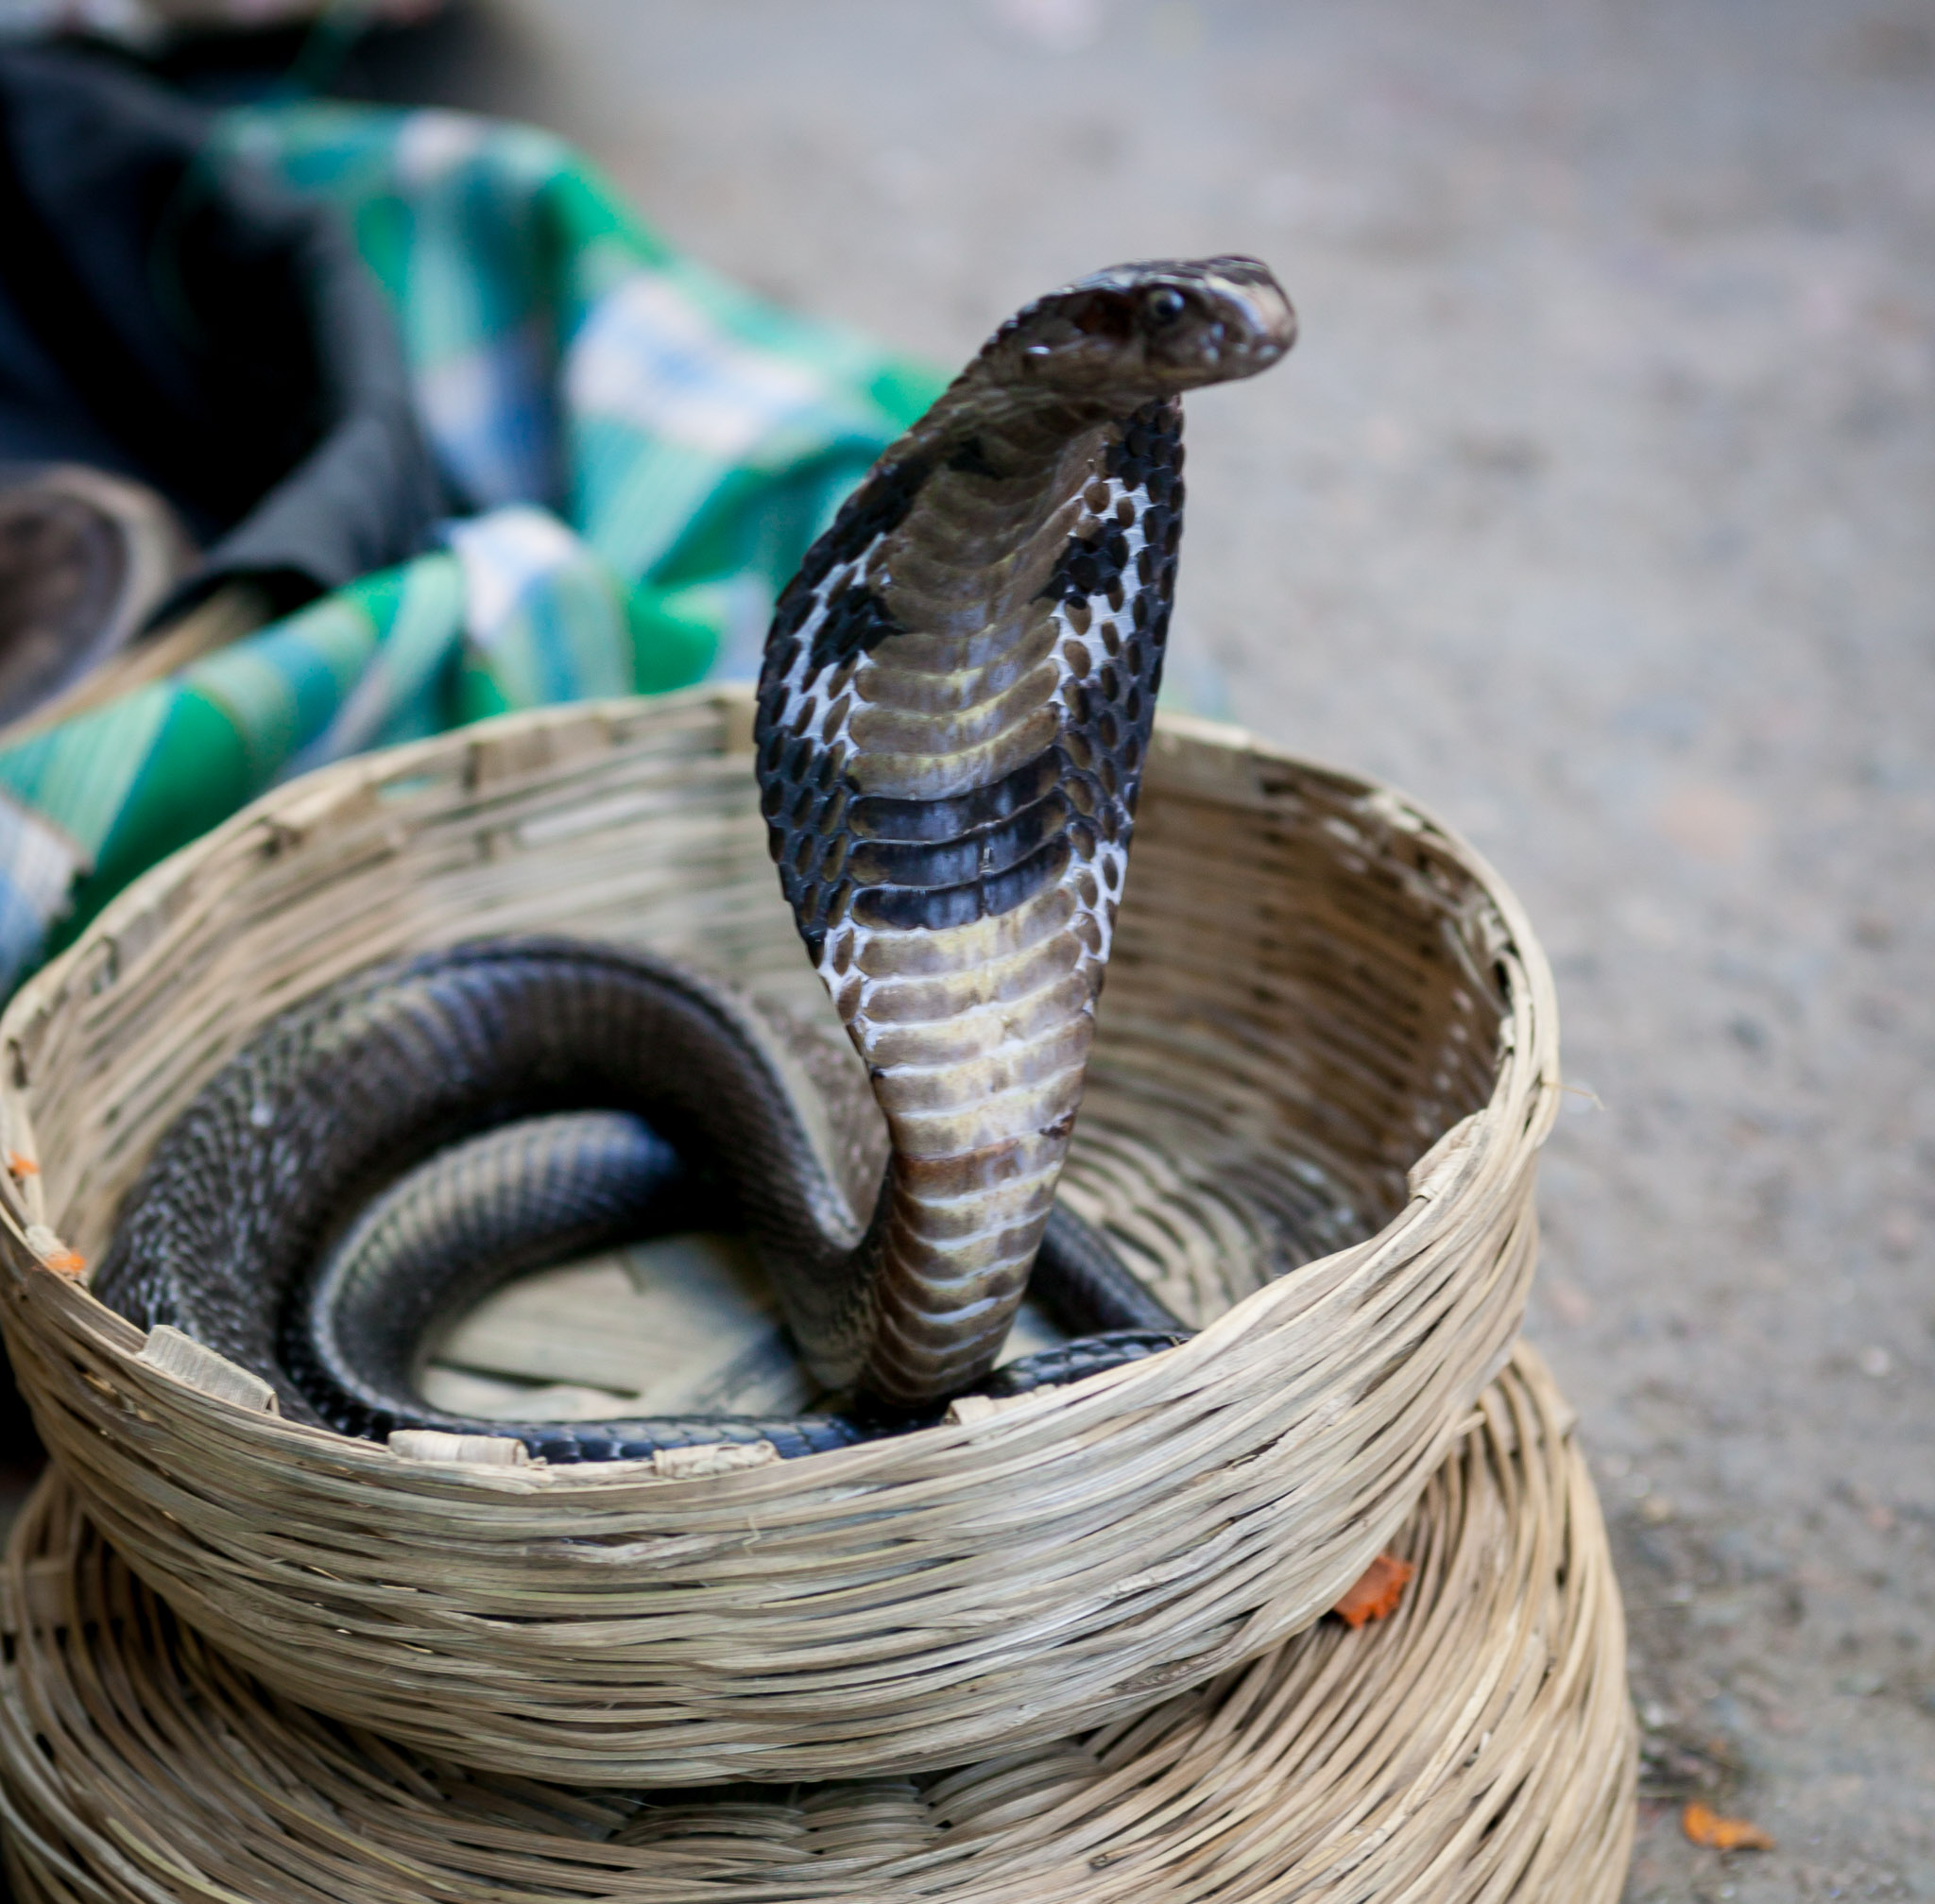 Young snake charmer